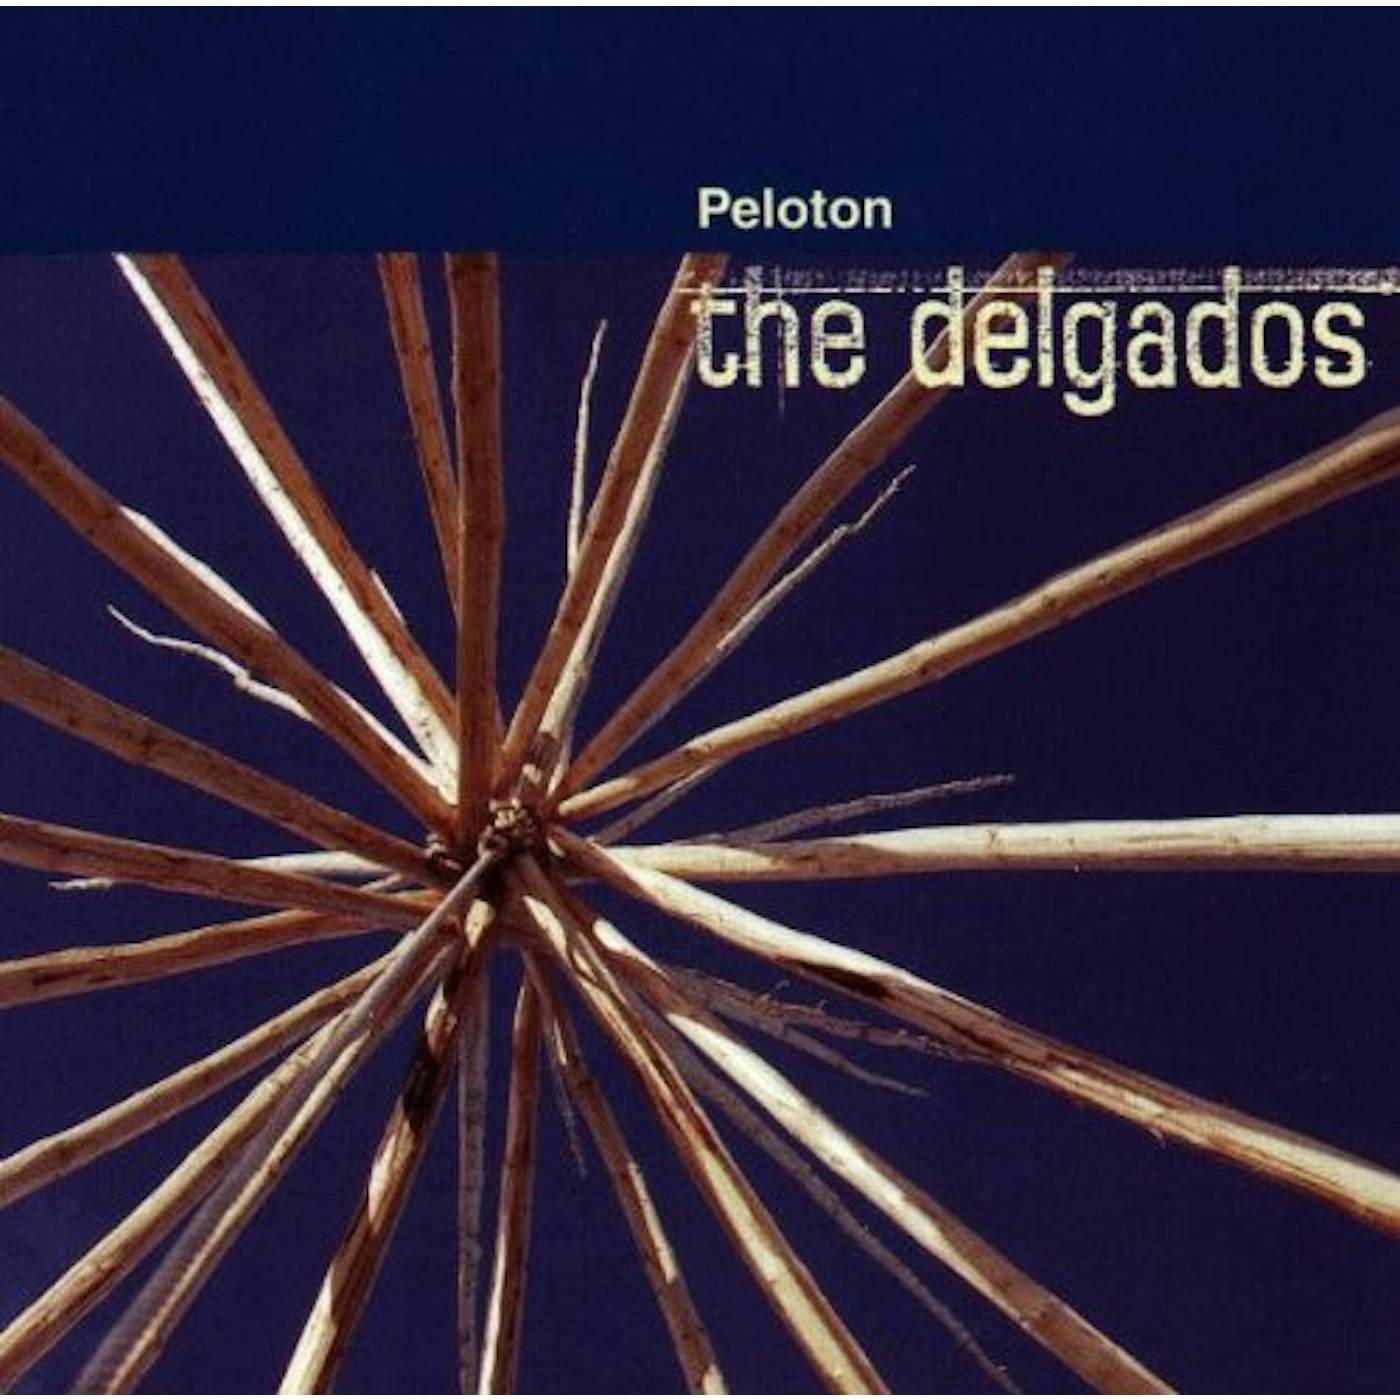 The Delgados PELOTON CD